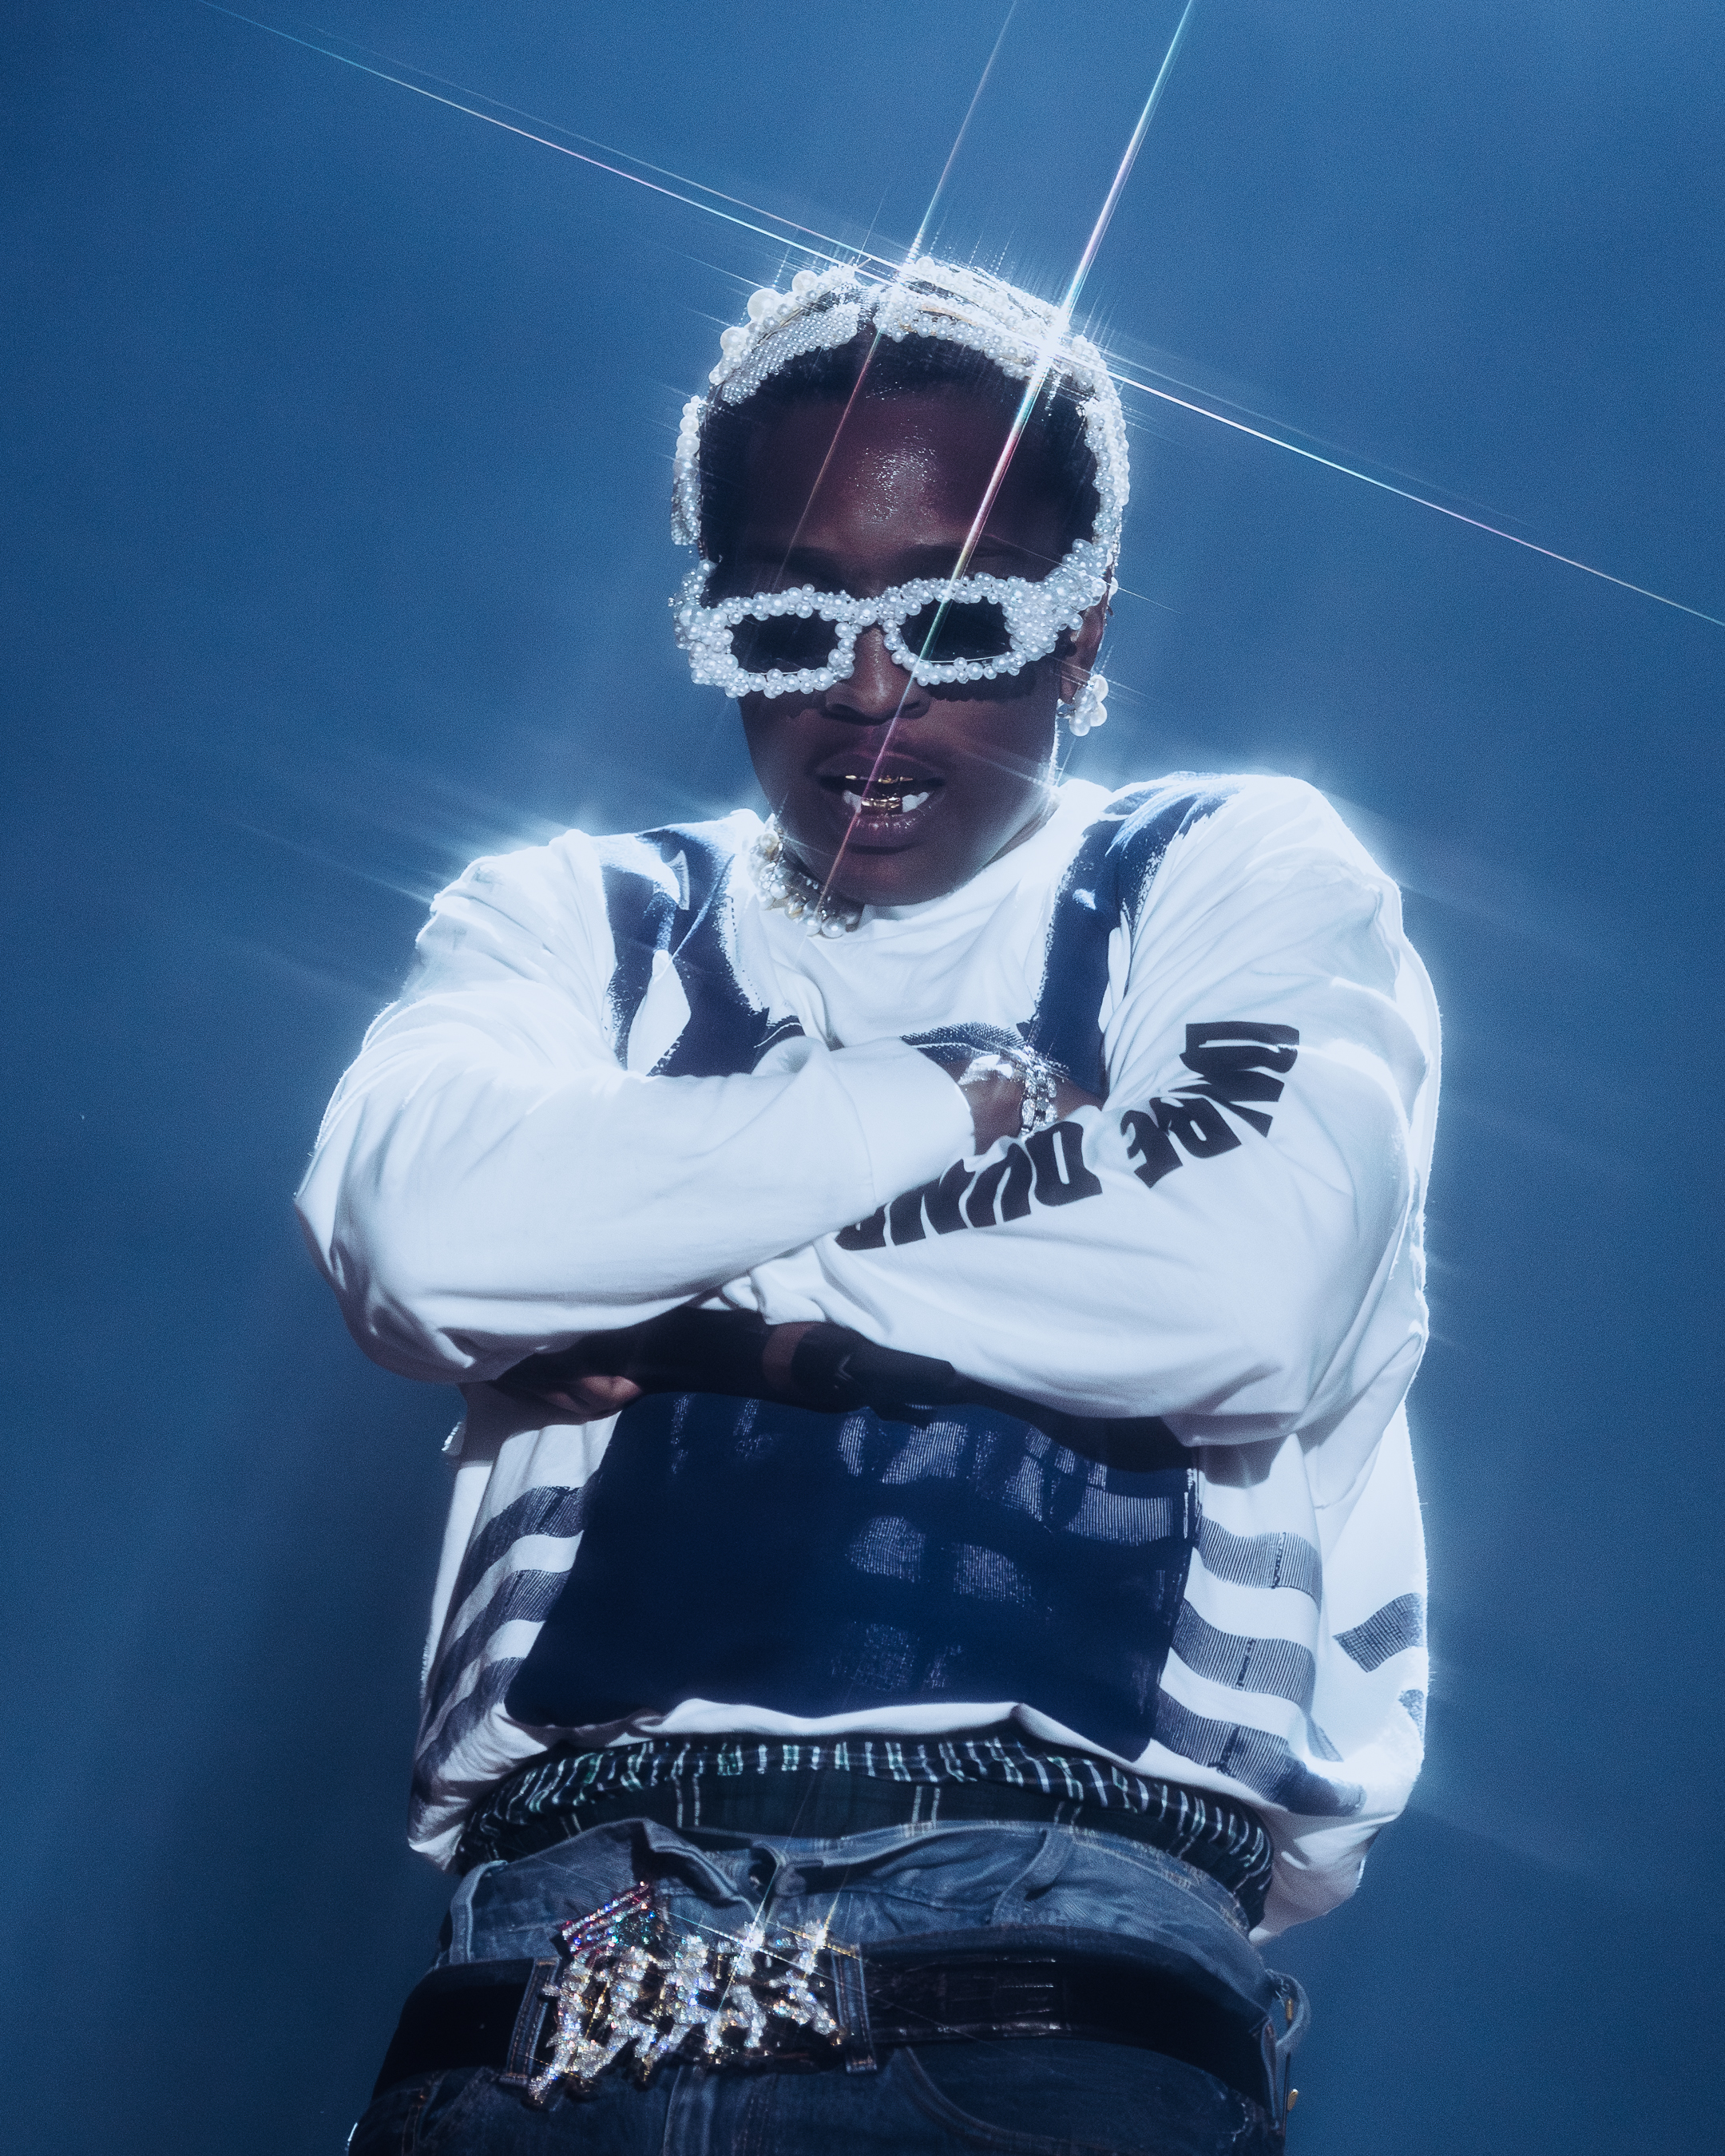 Why Fans Believe A$AP Rocky Is Dissing Rihanna's Ex Travis Scott